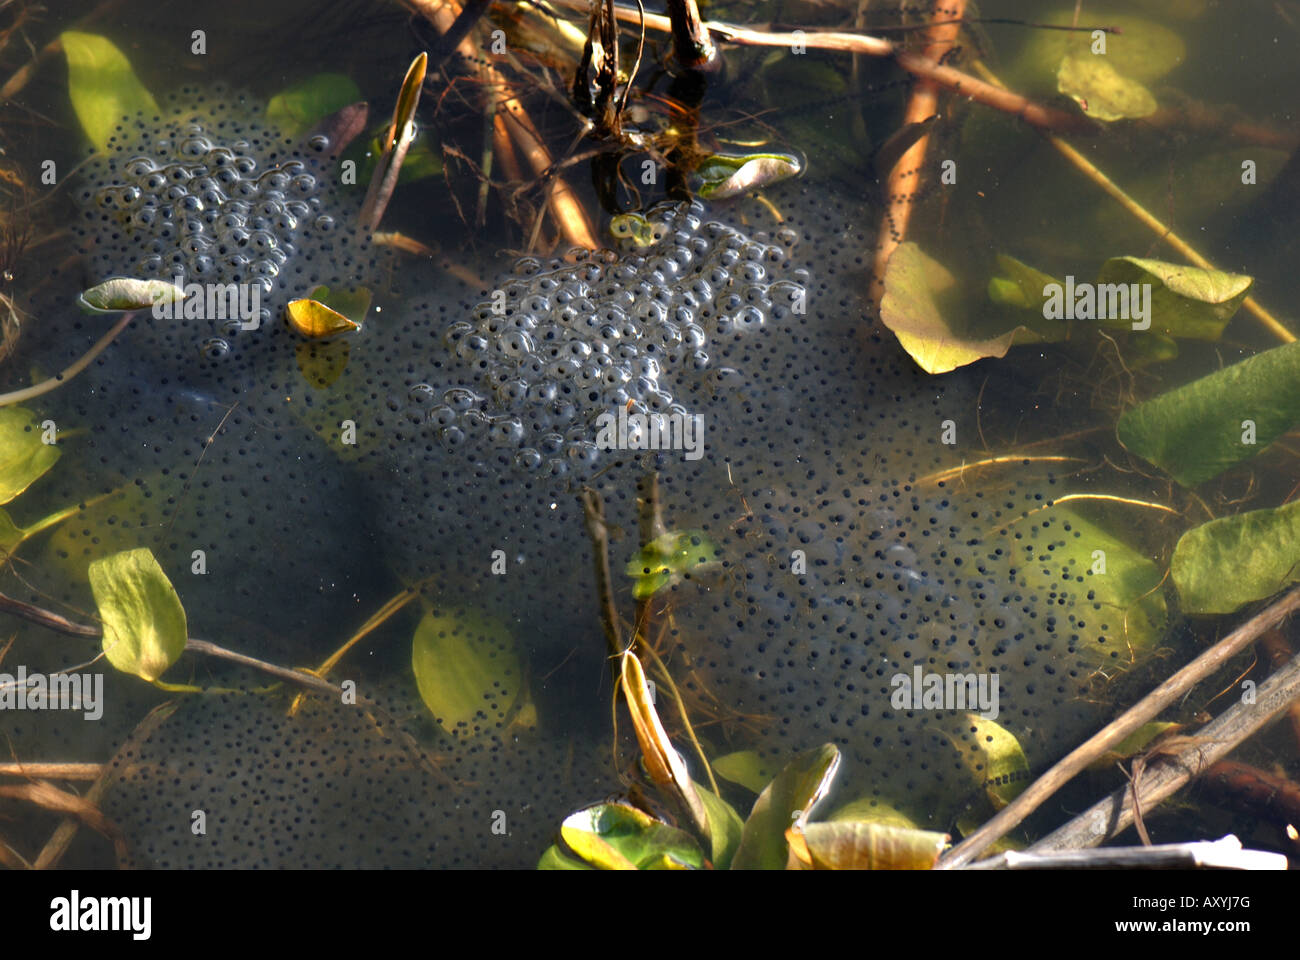 Unione di rana temporaria Rana frogspawn messa nel laghetto in giardino Foto Stock